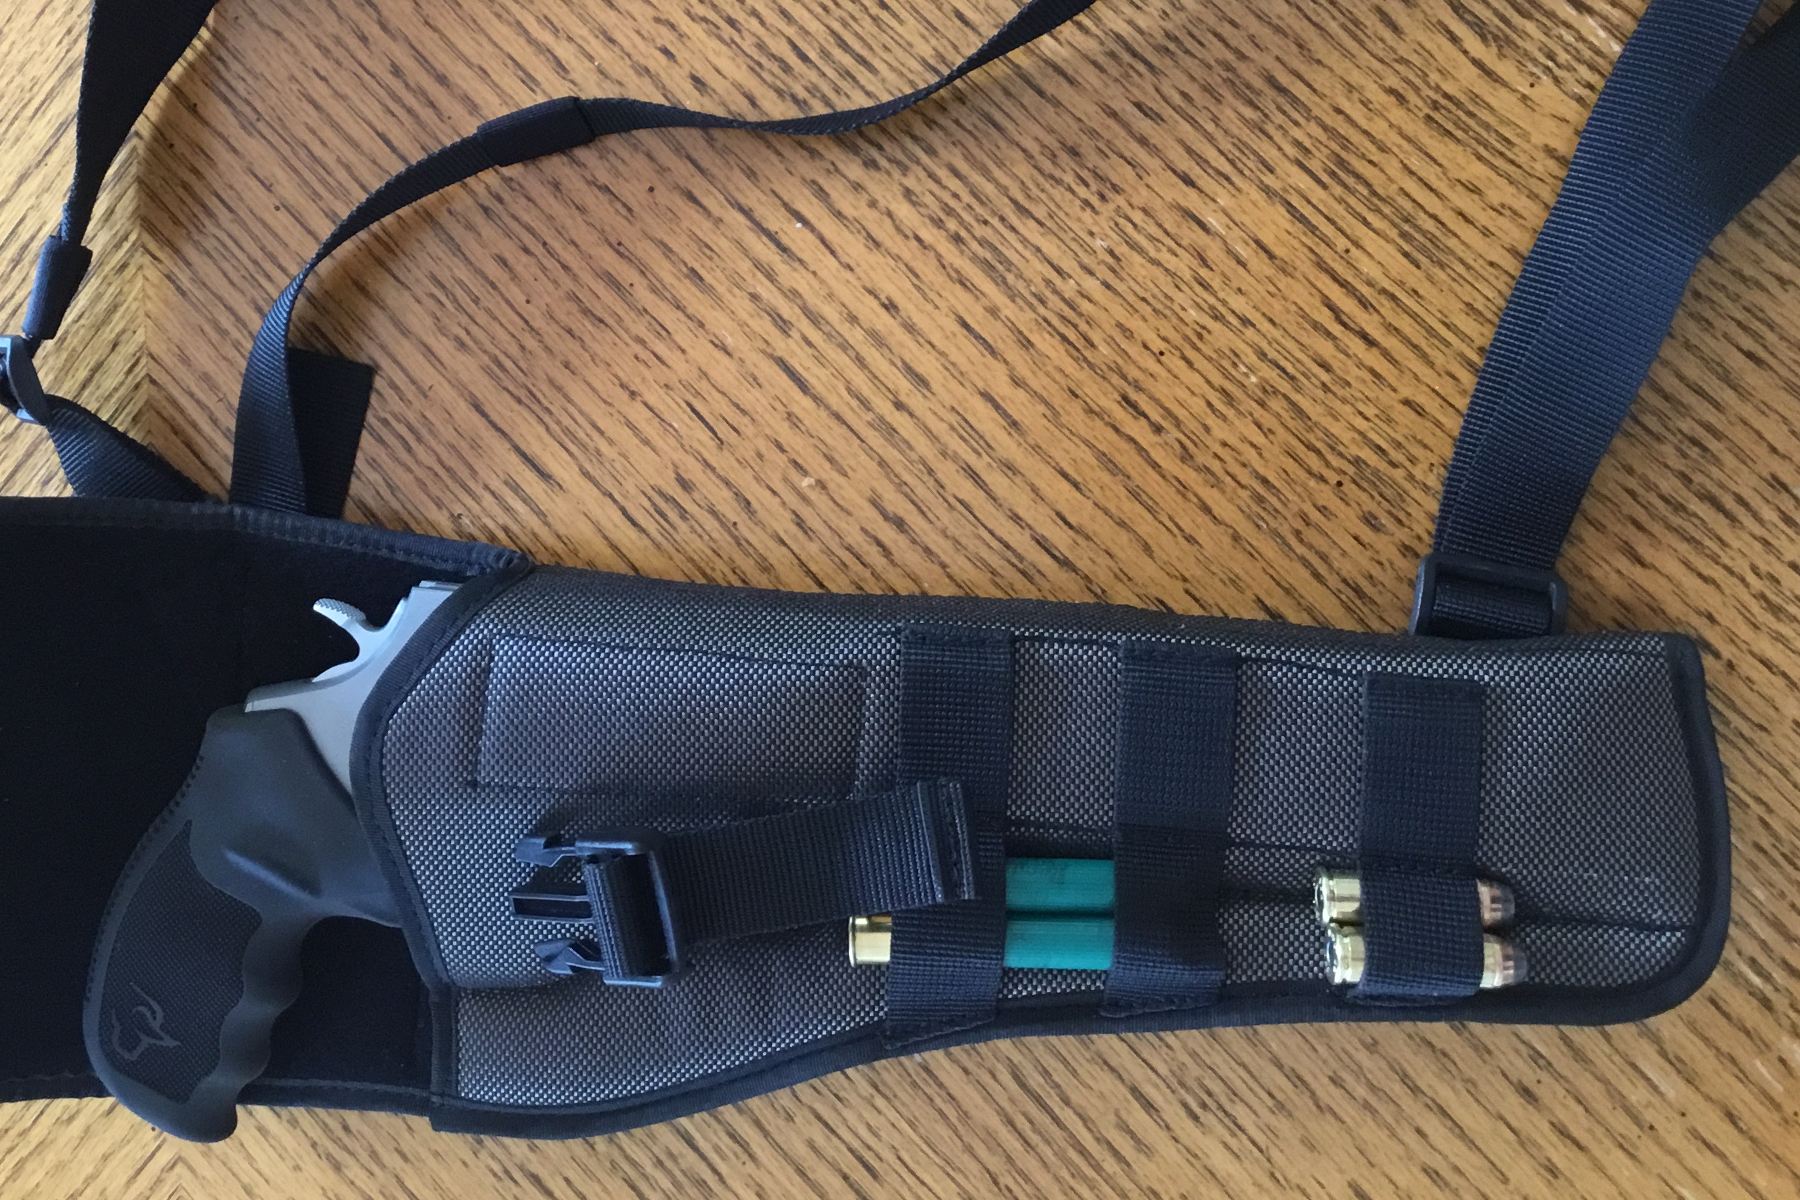 chest pistol holster for hiking